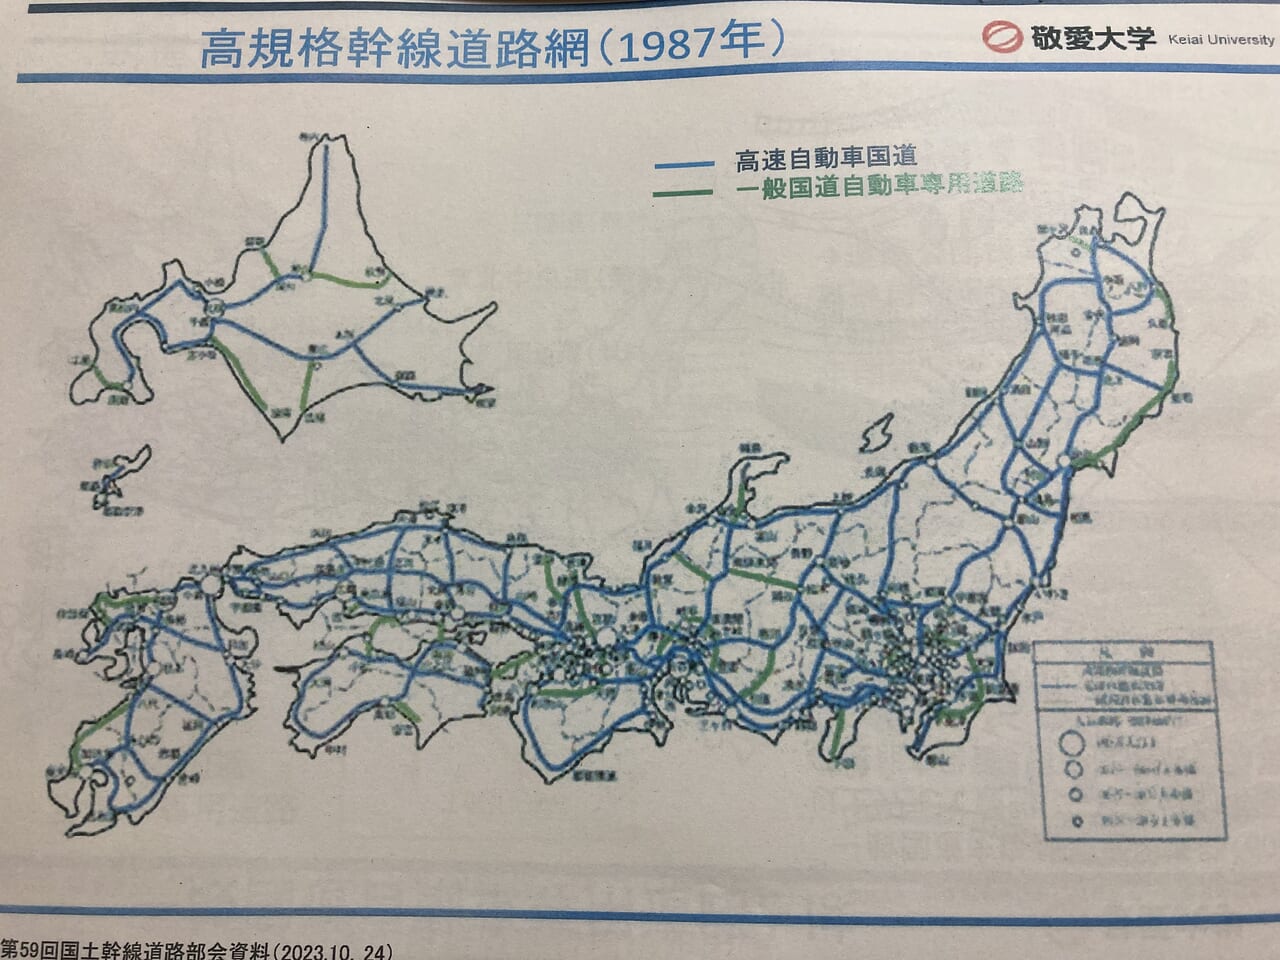 高規格幹線道路網（1987年）